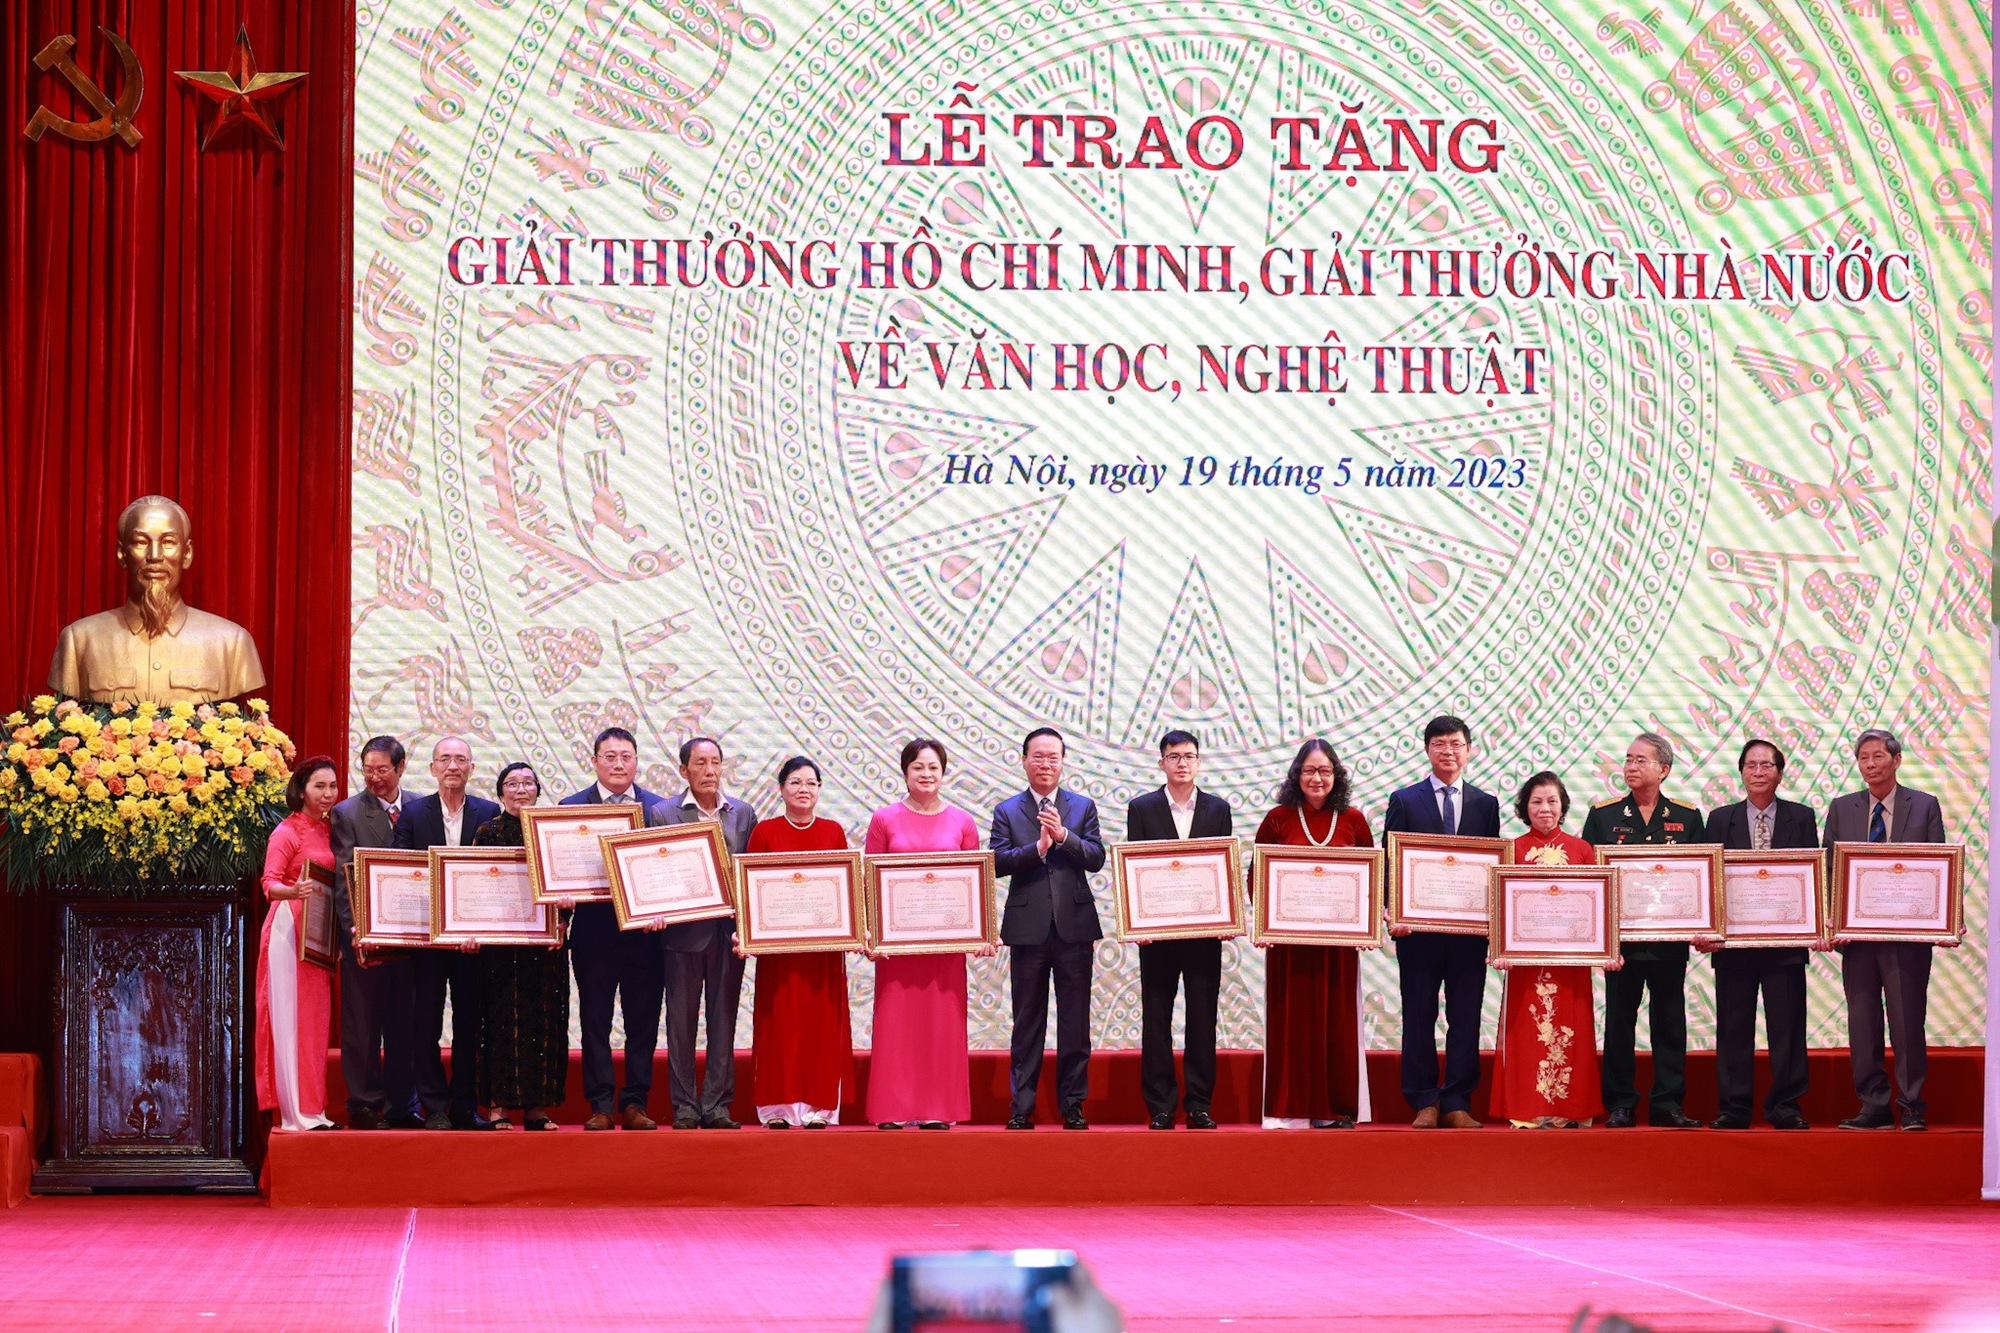 Phó Thủ tướng yêu cầu ứng kinh phí để chi trả tiền giải thưởng Hồ Chí Minh, giải thưởng Nhà nước - Ảnh 3.